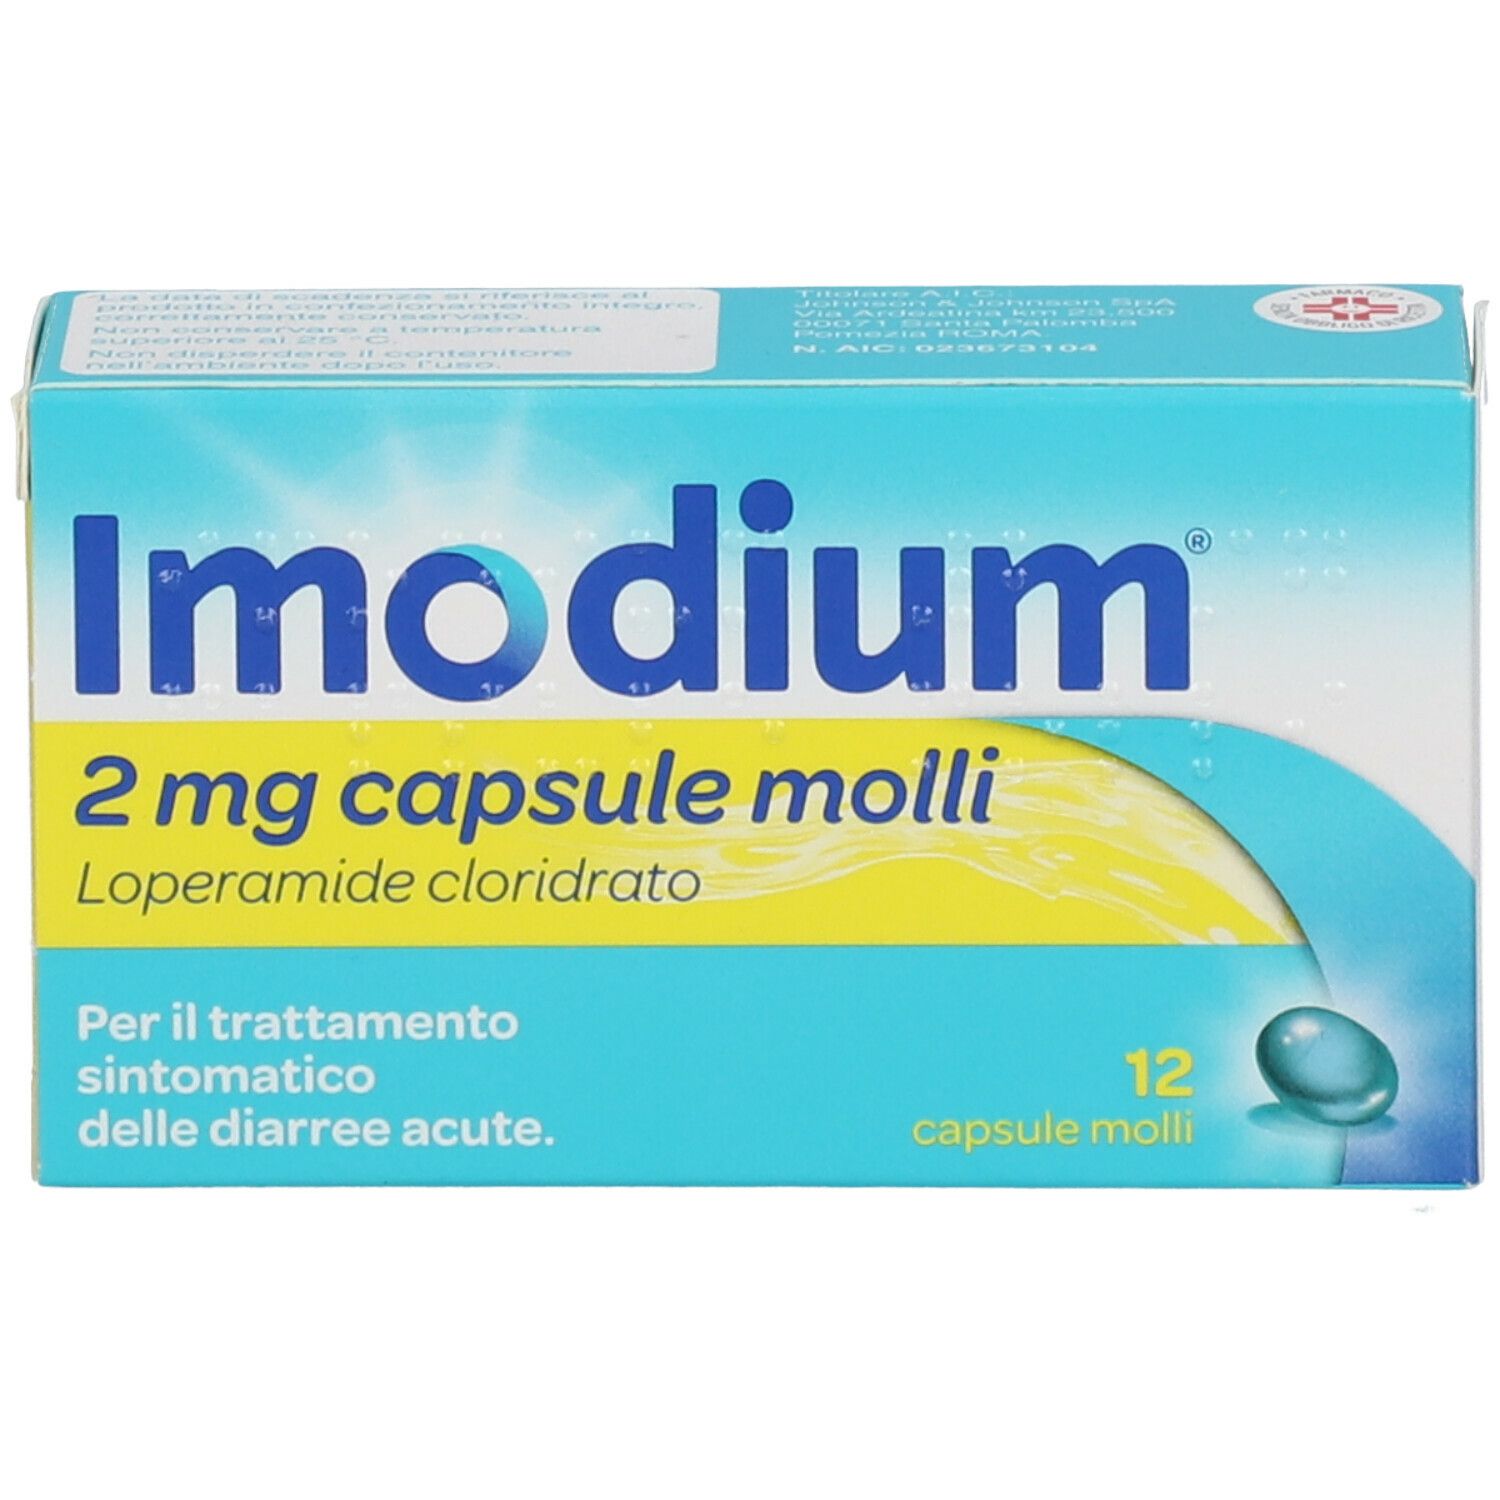 Imodium® Capsule Molli